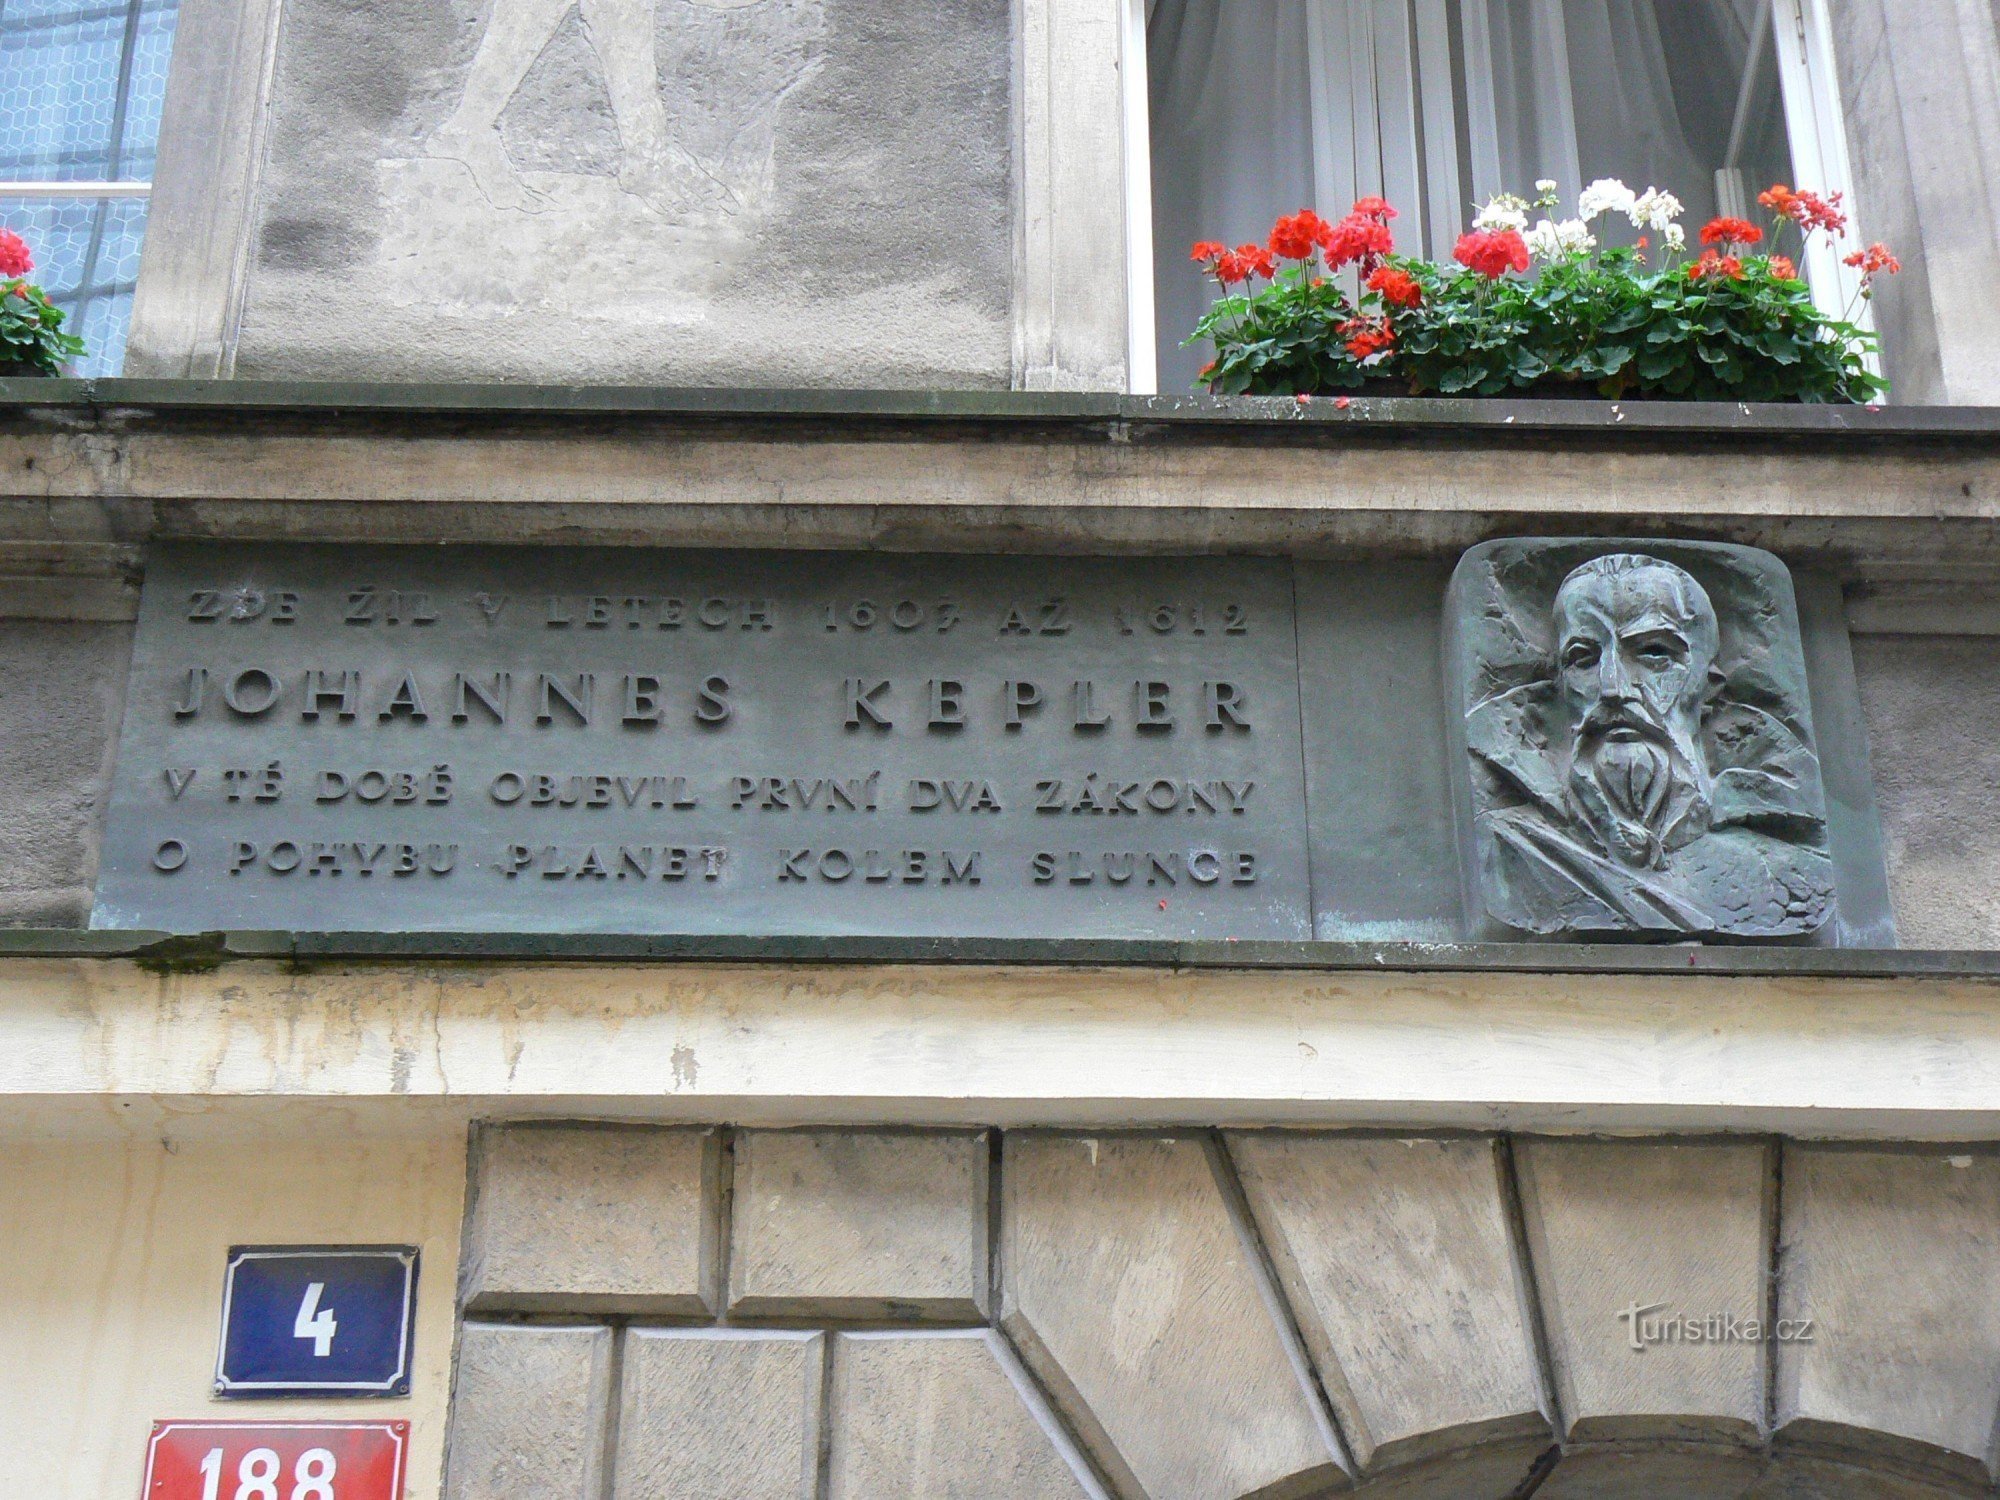 Johannes Kepler mindeplade